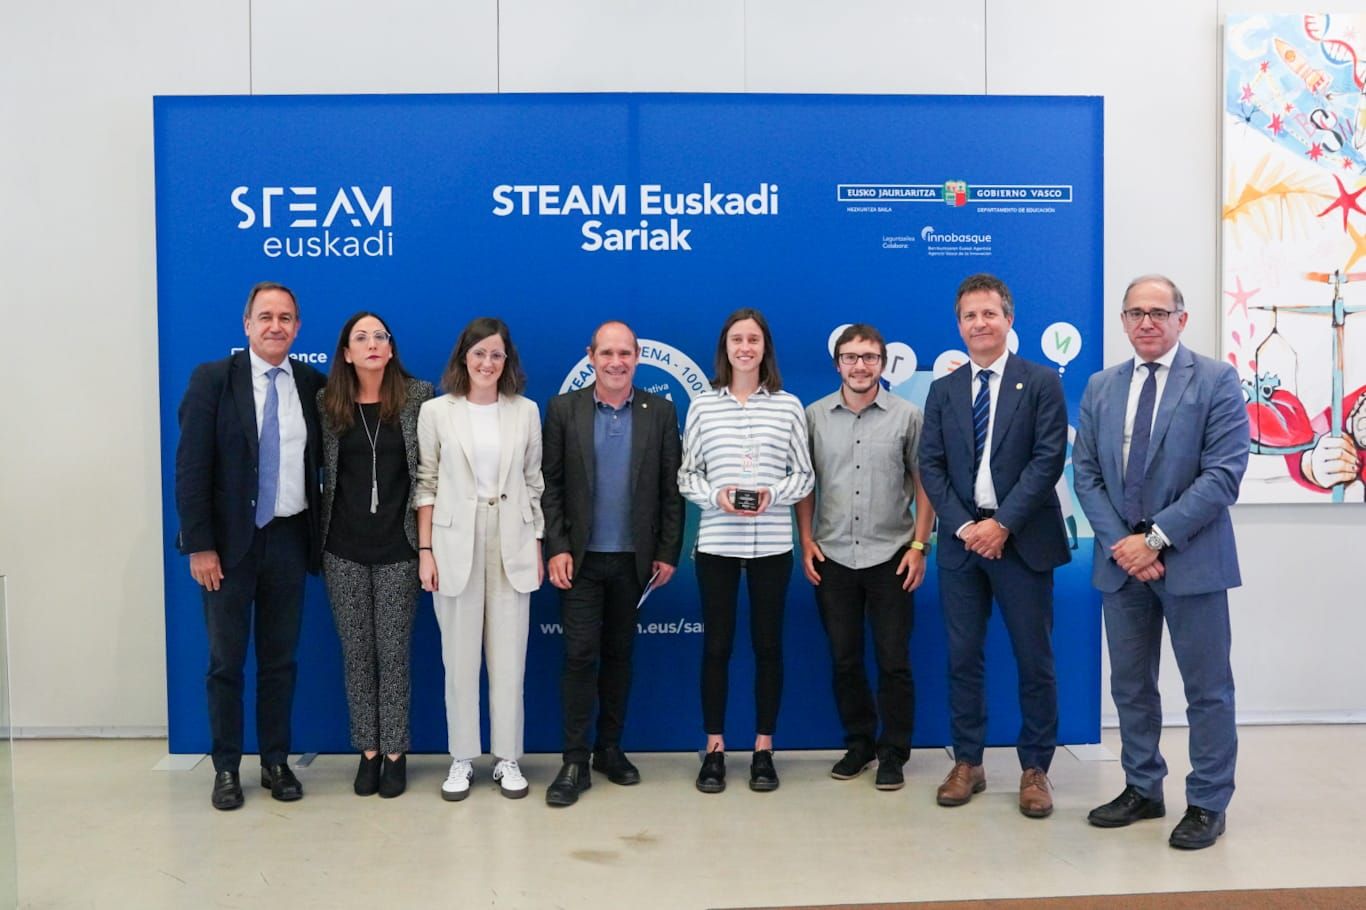 Vicomtech-ek, Mondragon Unibertsitateak eta Ikaslan Gipuzkoak bigarren saria jaso dute STEAM Euskadi sarietan, beren proiektu komunarekin: STEMotiv